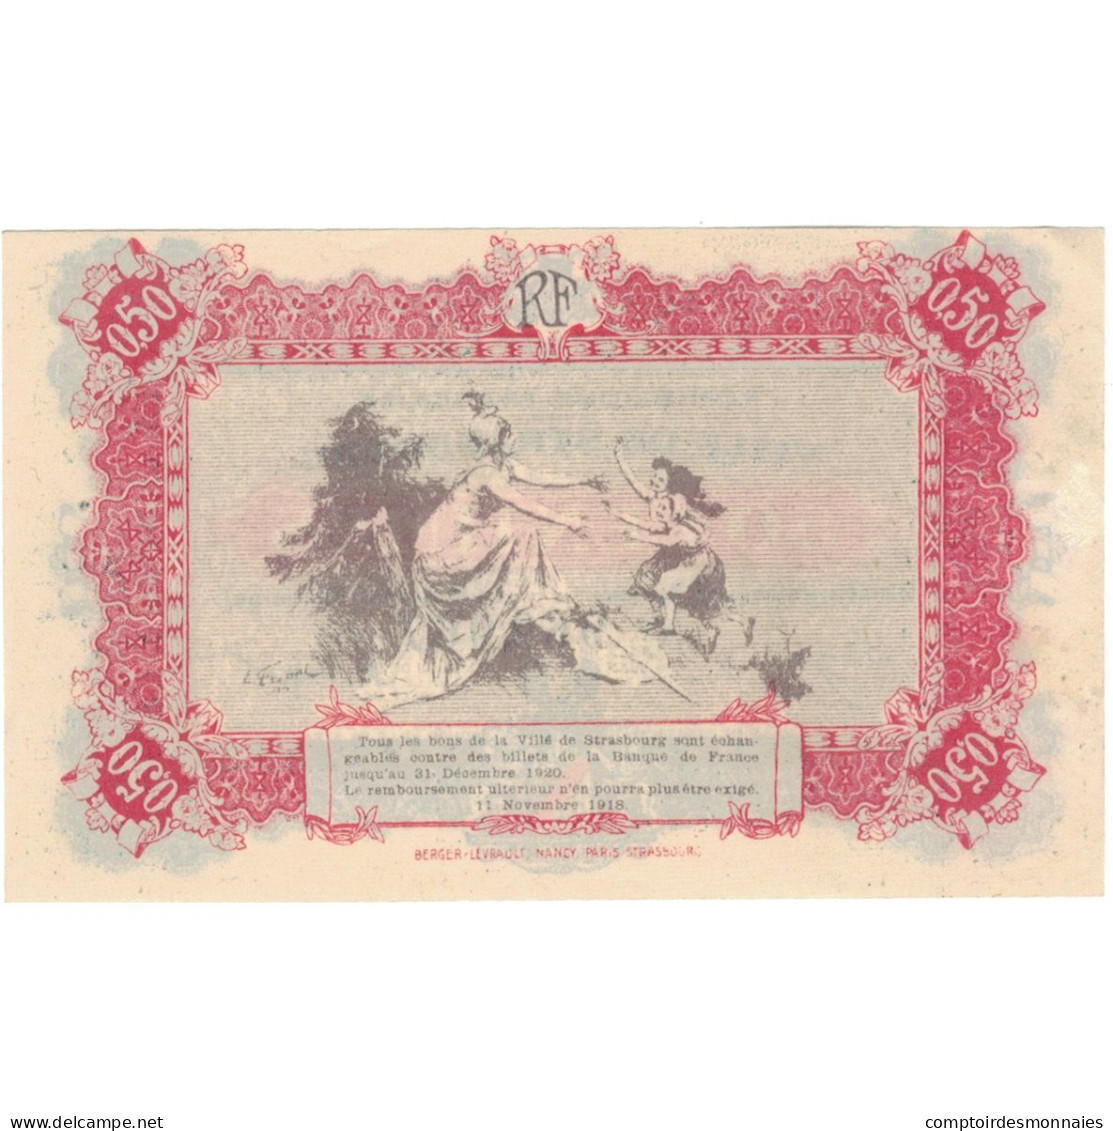 France, Strasbourg, 50 Centimes, 1918, SPL+, Pirot:133-1 - Chambre De Commerce